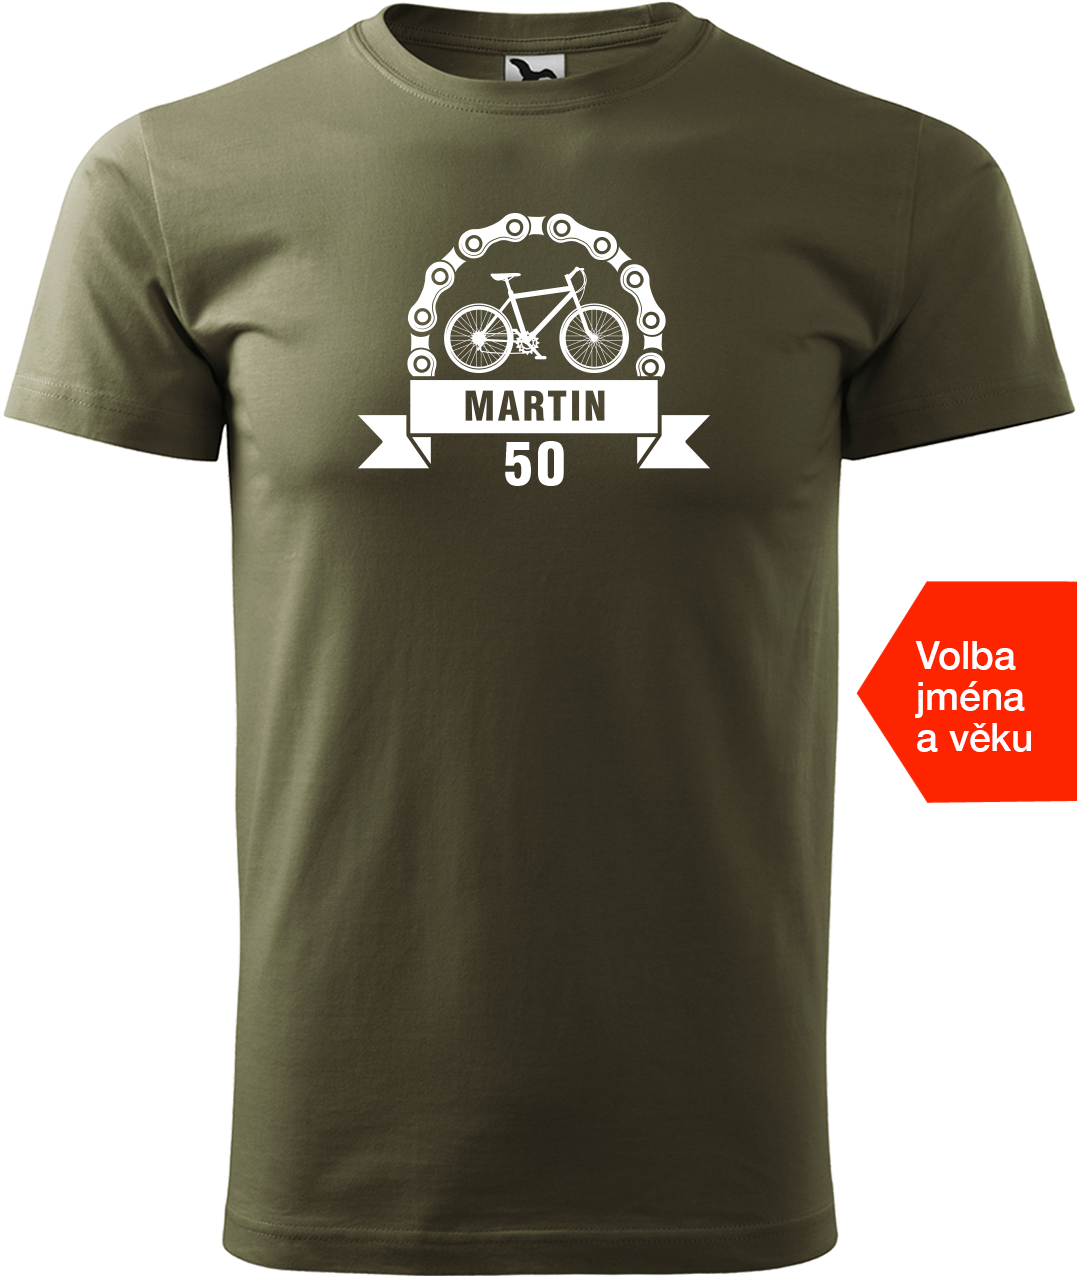 Pánské tričko pro cyklistu se jménem a věkem - Blahopřání Velikost: 4XL, Barva: Military (69)